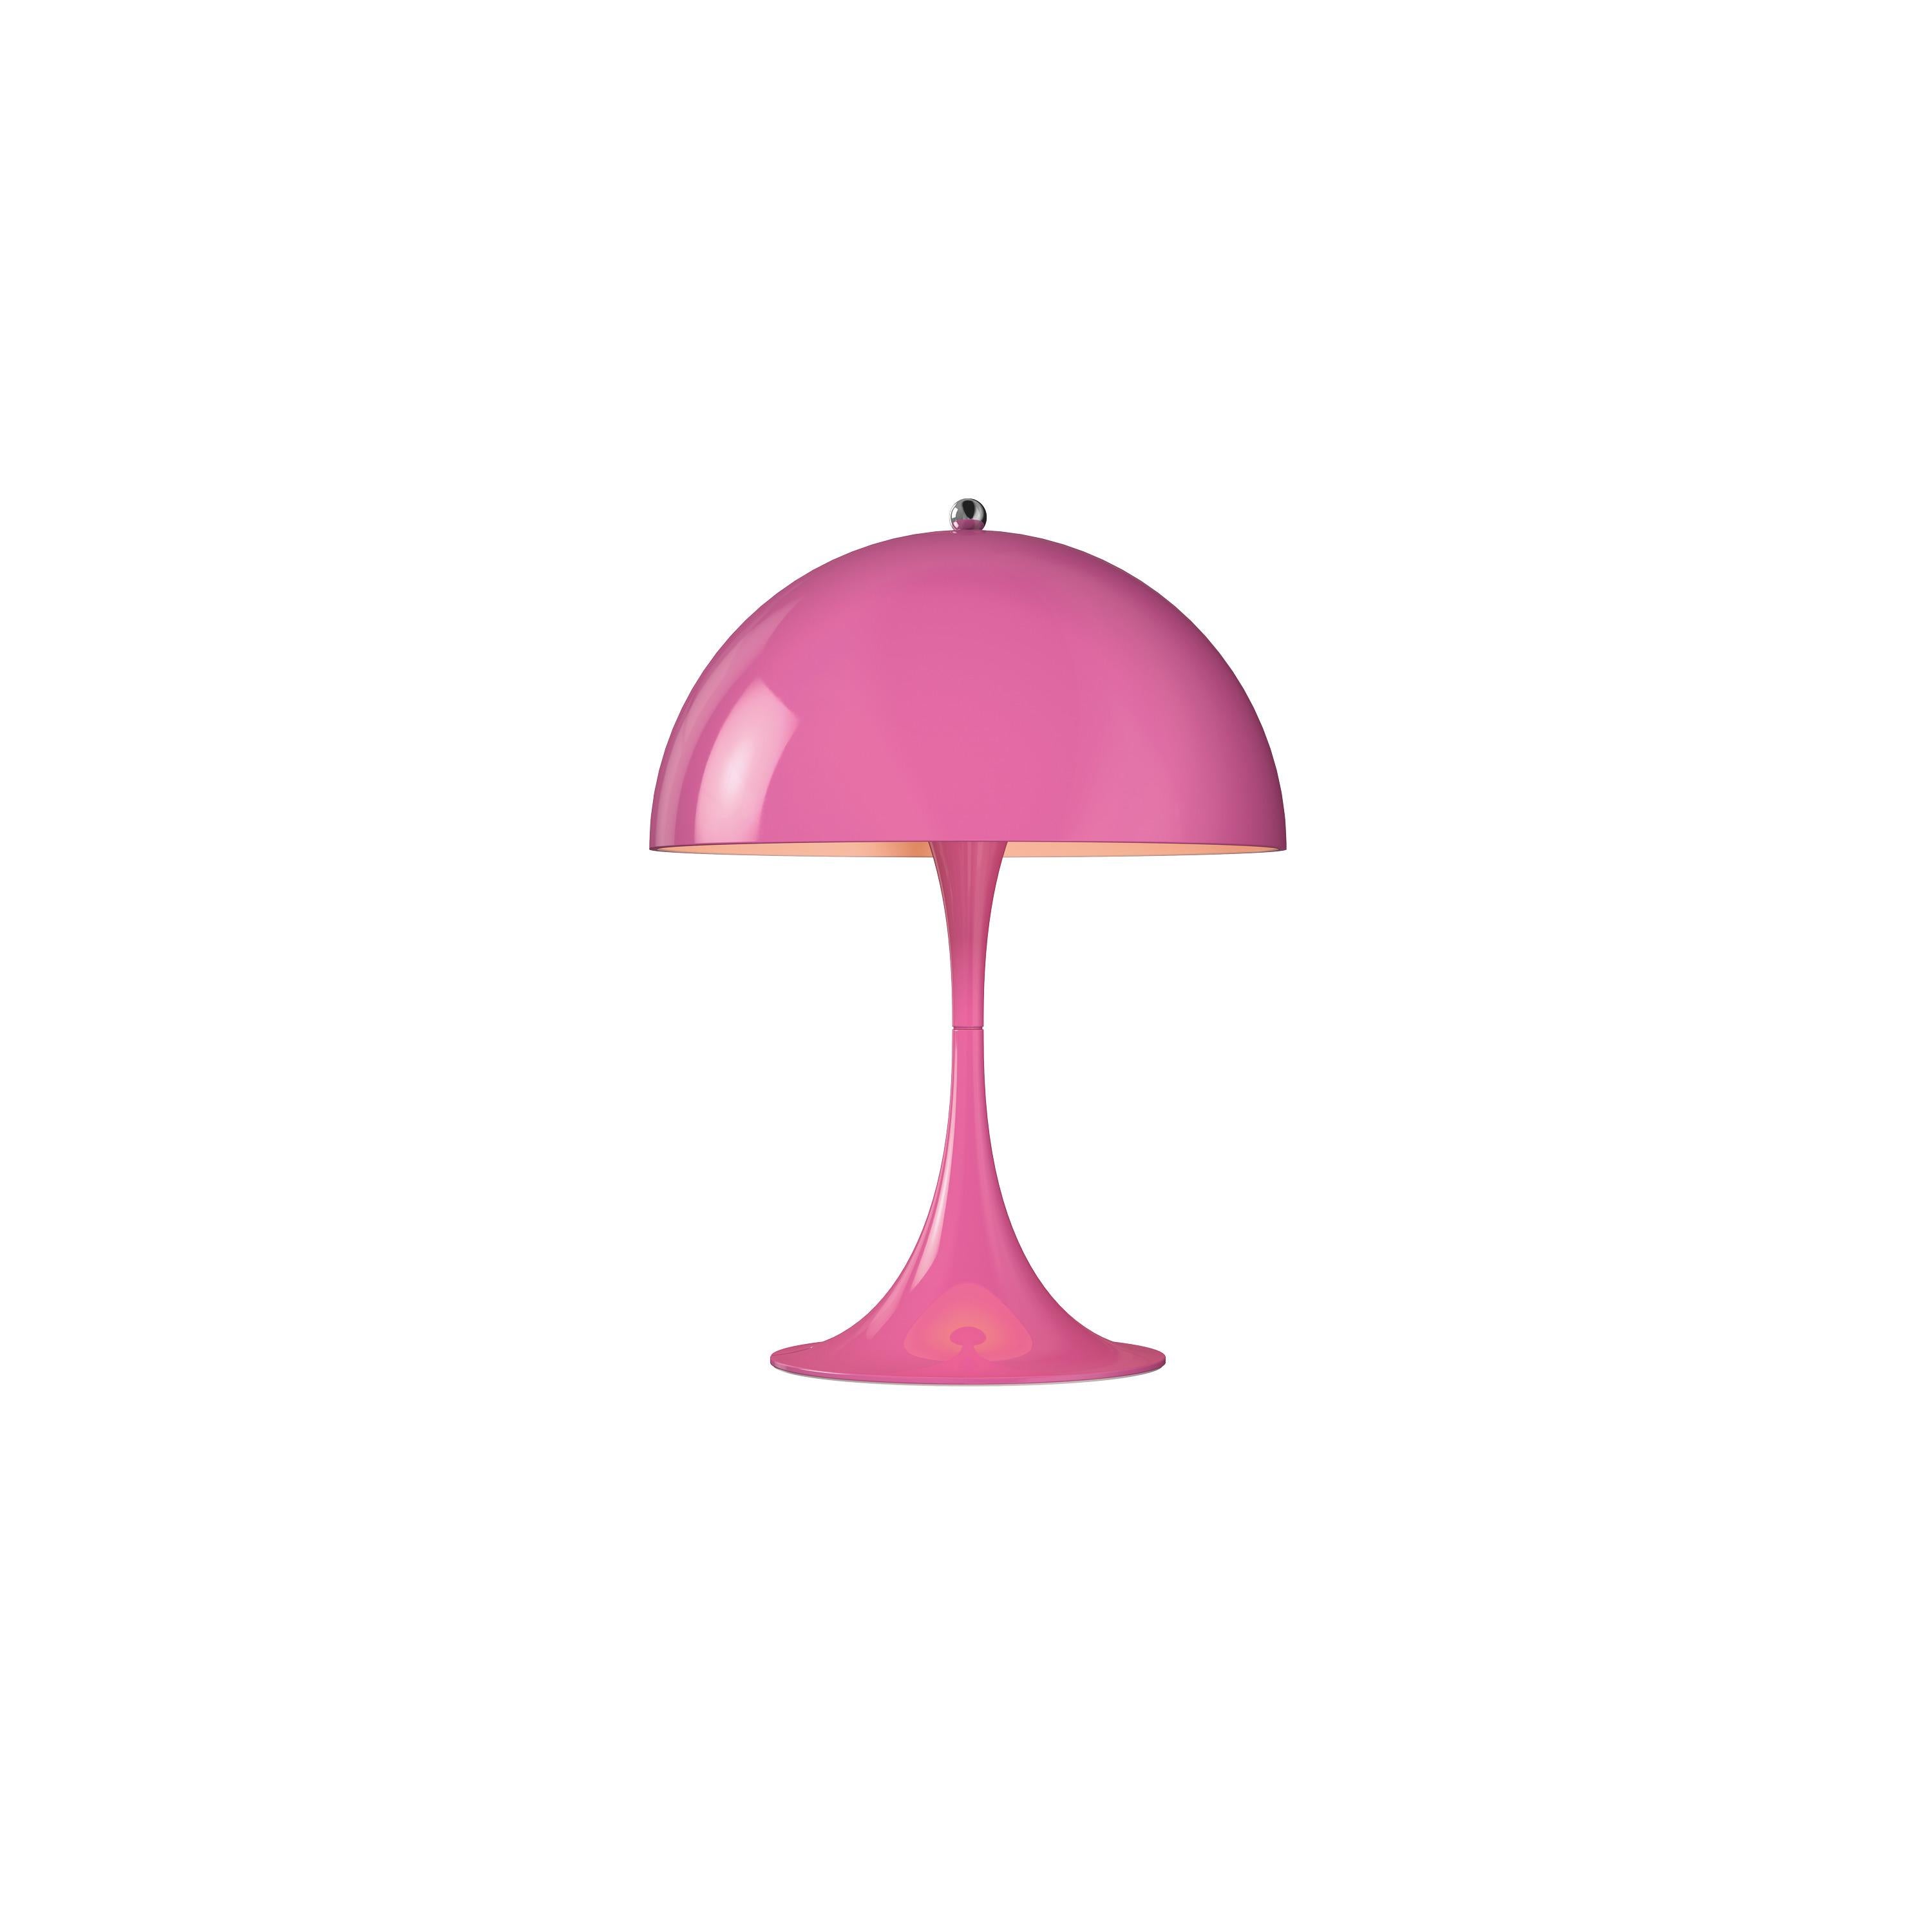 Im Angebot: Louis Poulsen Panthella 250, Tischlampe von Verner Panton, Pink (pink.jpg)